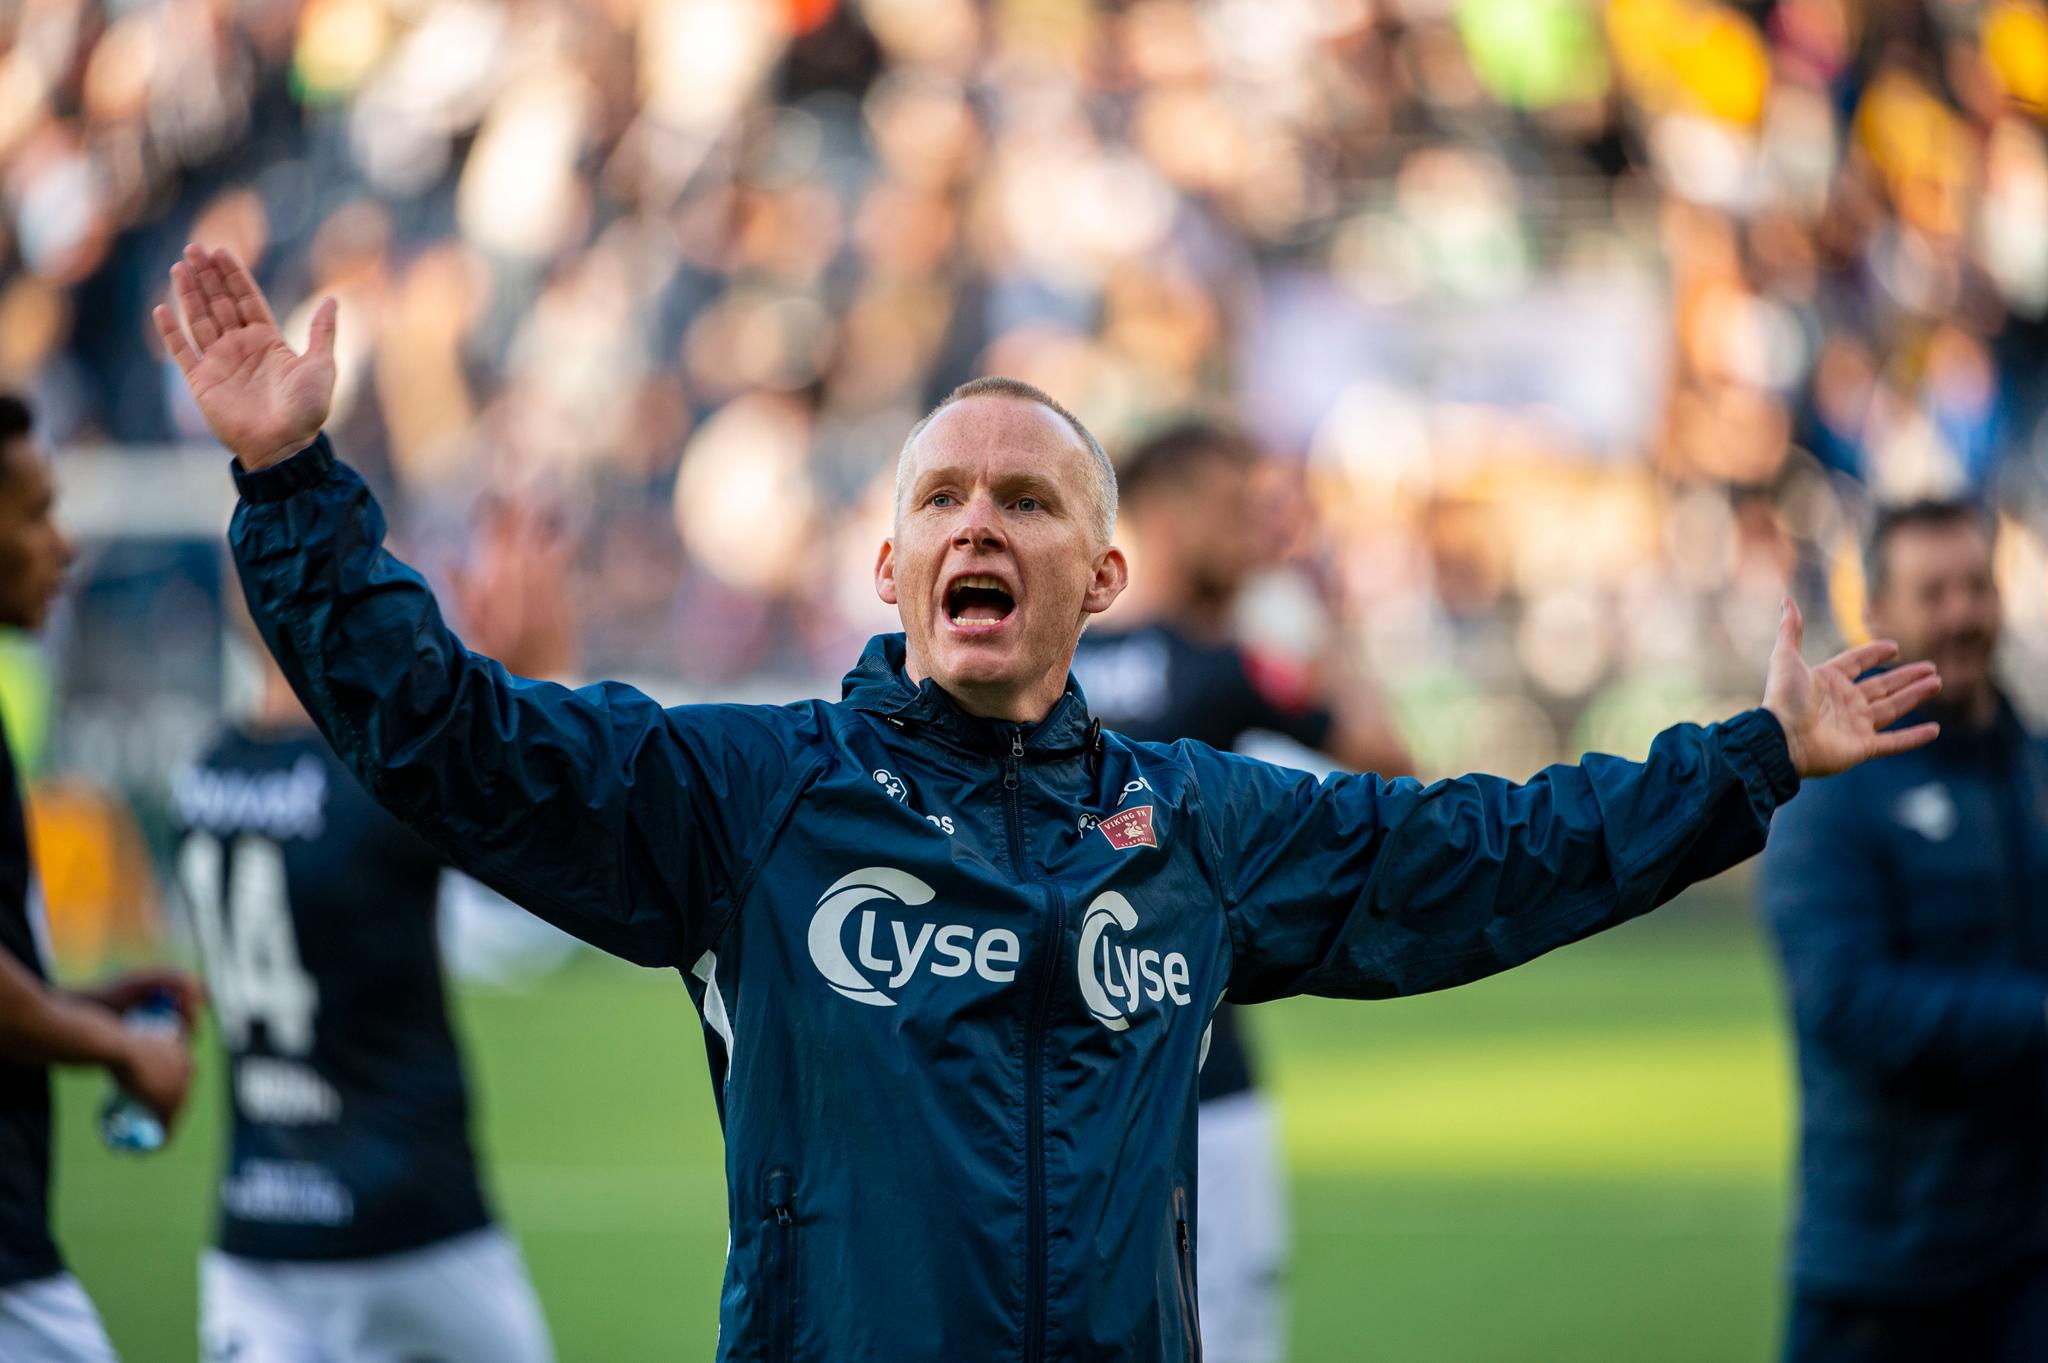 MESTERTAKTER: Viking-trener Morten Jensen leder laget som topper tabellen på nasjonaldagen.